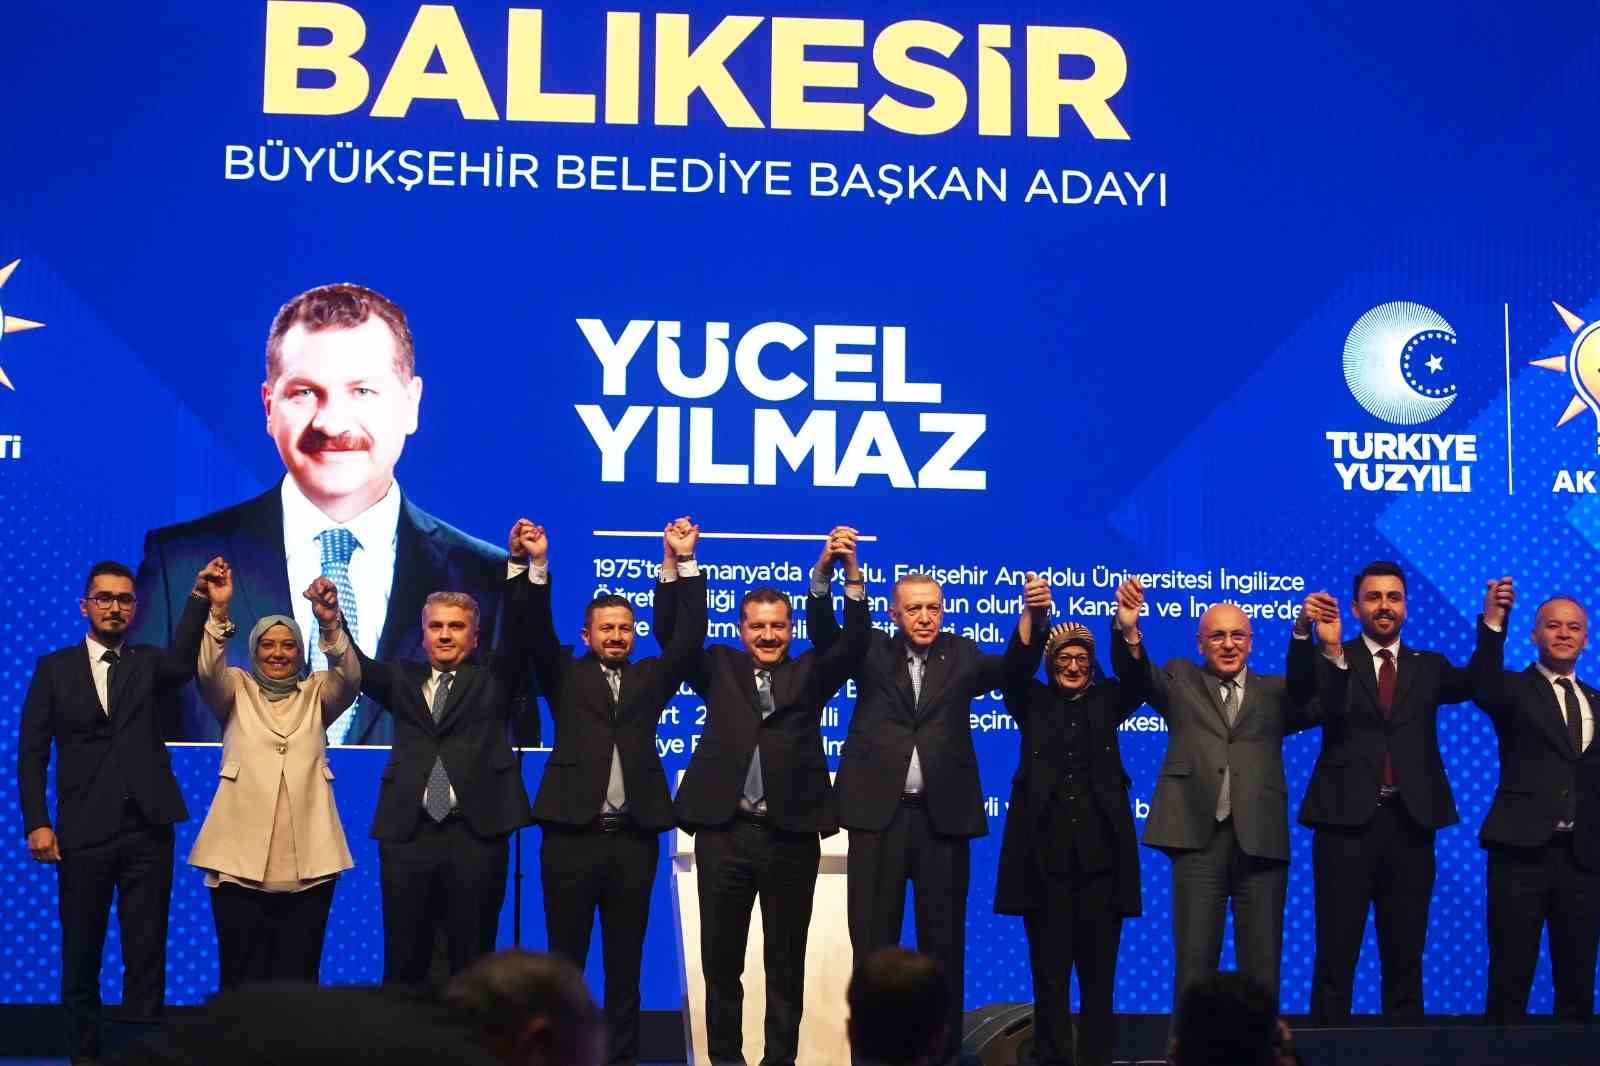 AK Parti’nin Balıkesir Büyükşehir Belediye Başkan Adayı Yücel Yılmaz